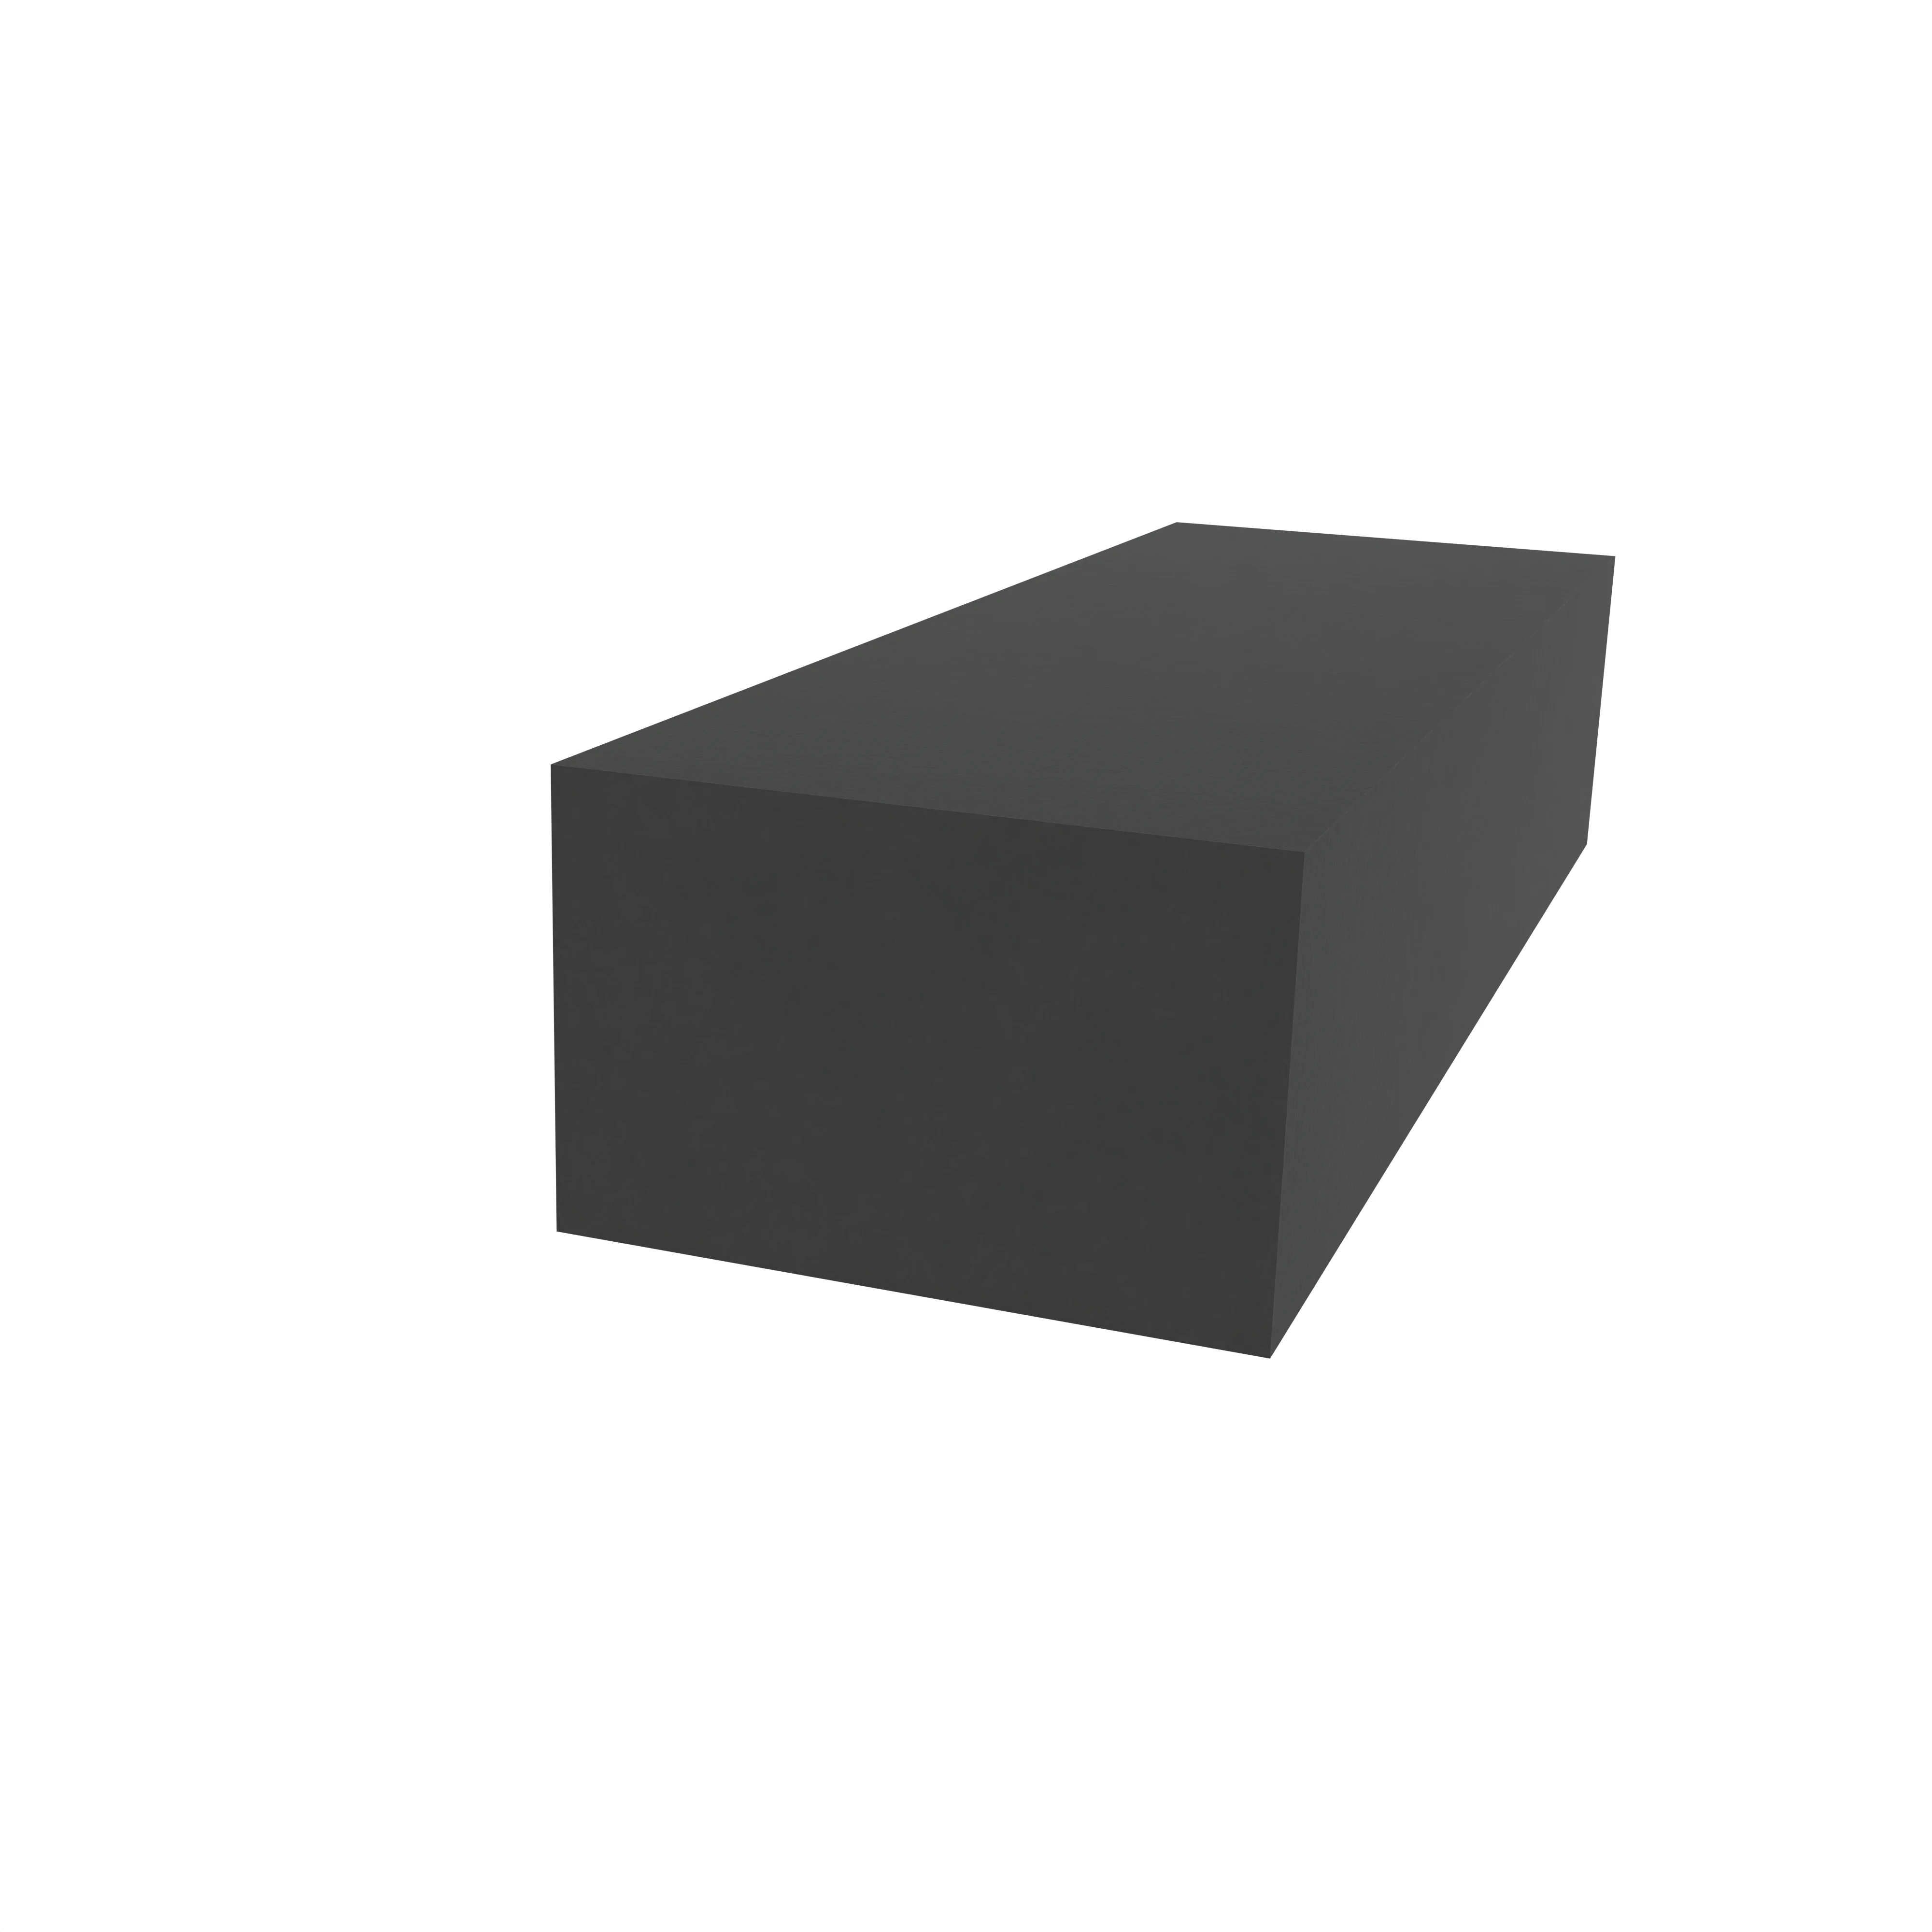 Moosgummidichtung vierkant | 6 mm Breite | Farbe: schwarz